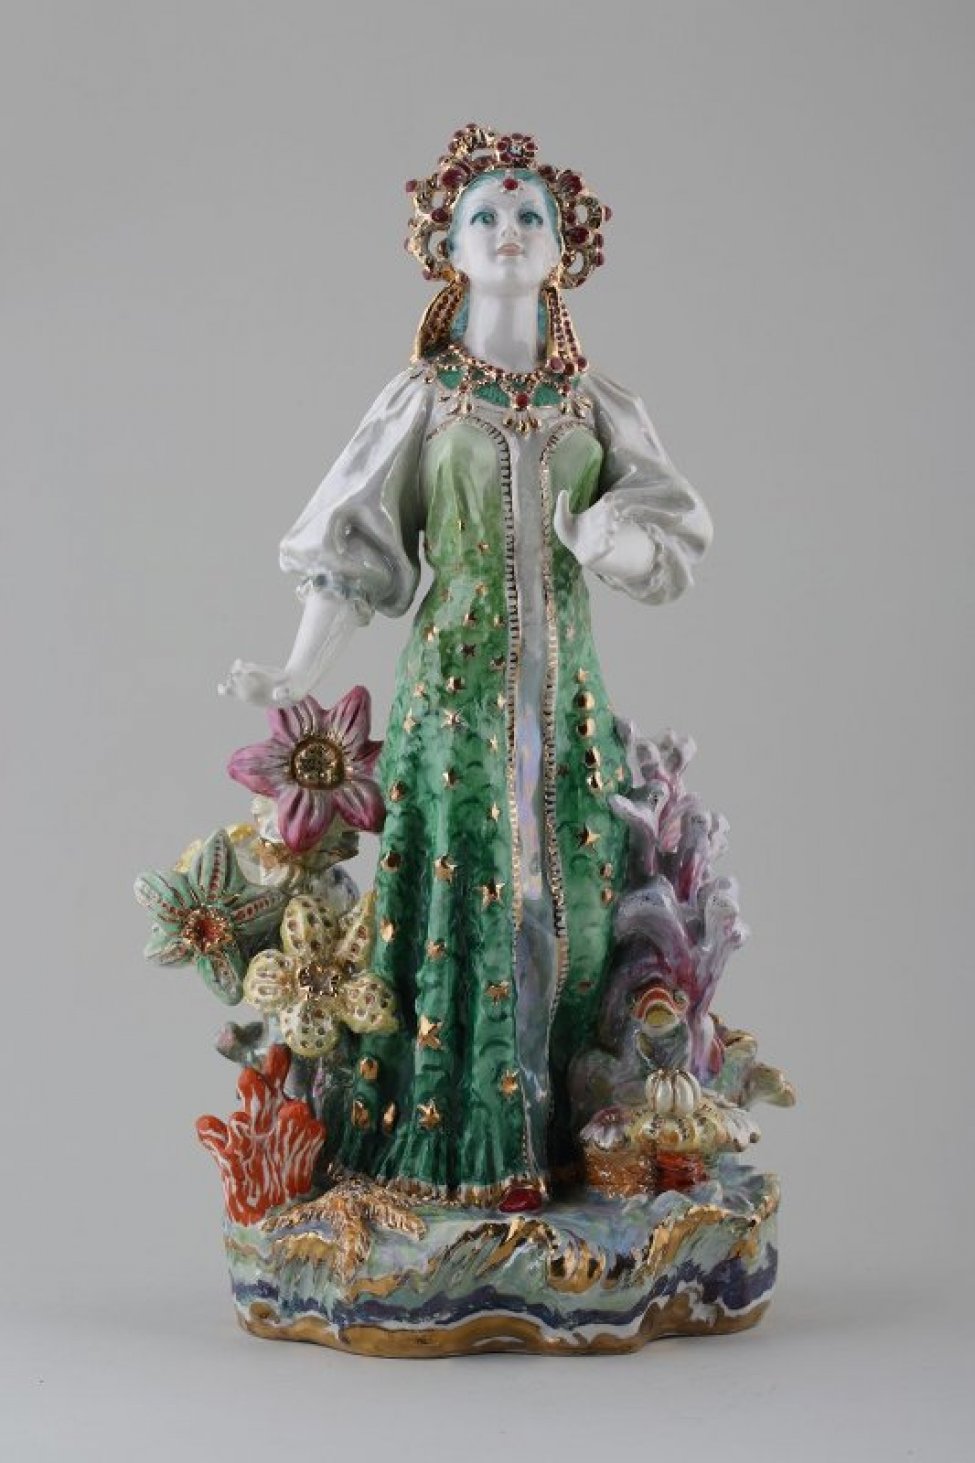 Фигура молодой девушки на плинте, идущей по «морю», среди стилизованных цветов; она одета в национальный русский сарафан малахитового цвета, на голове стилизованный кокошник;